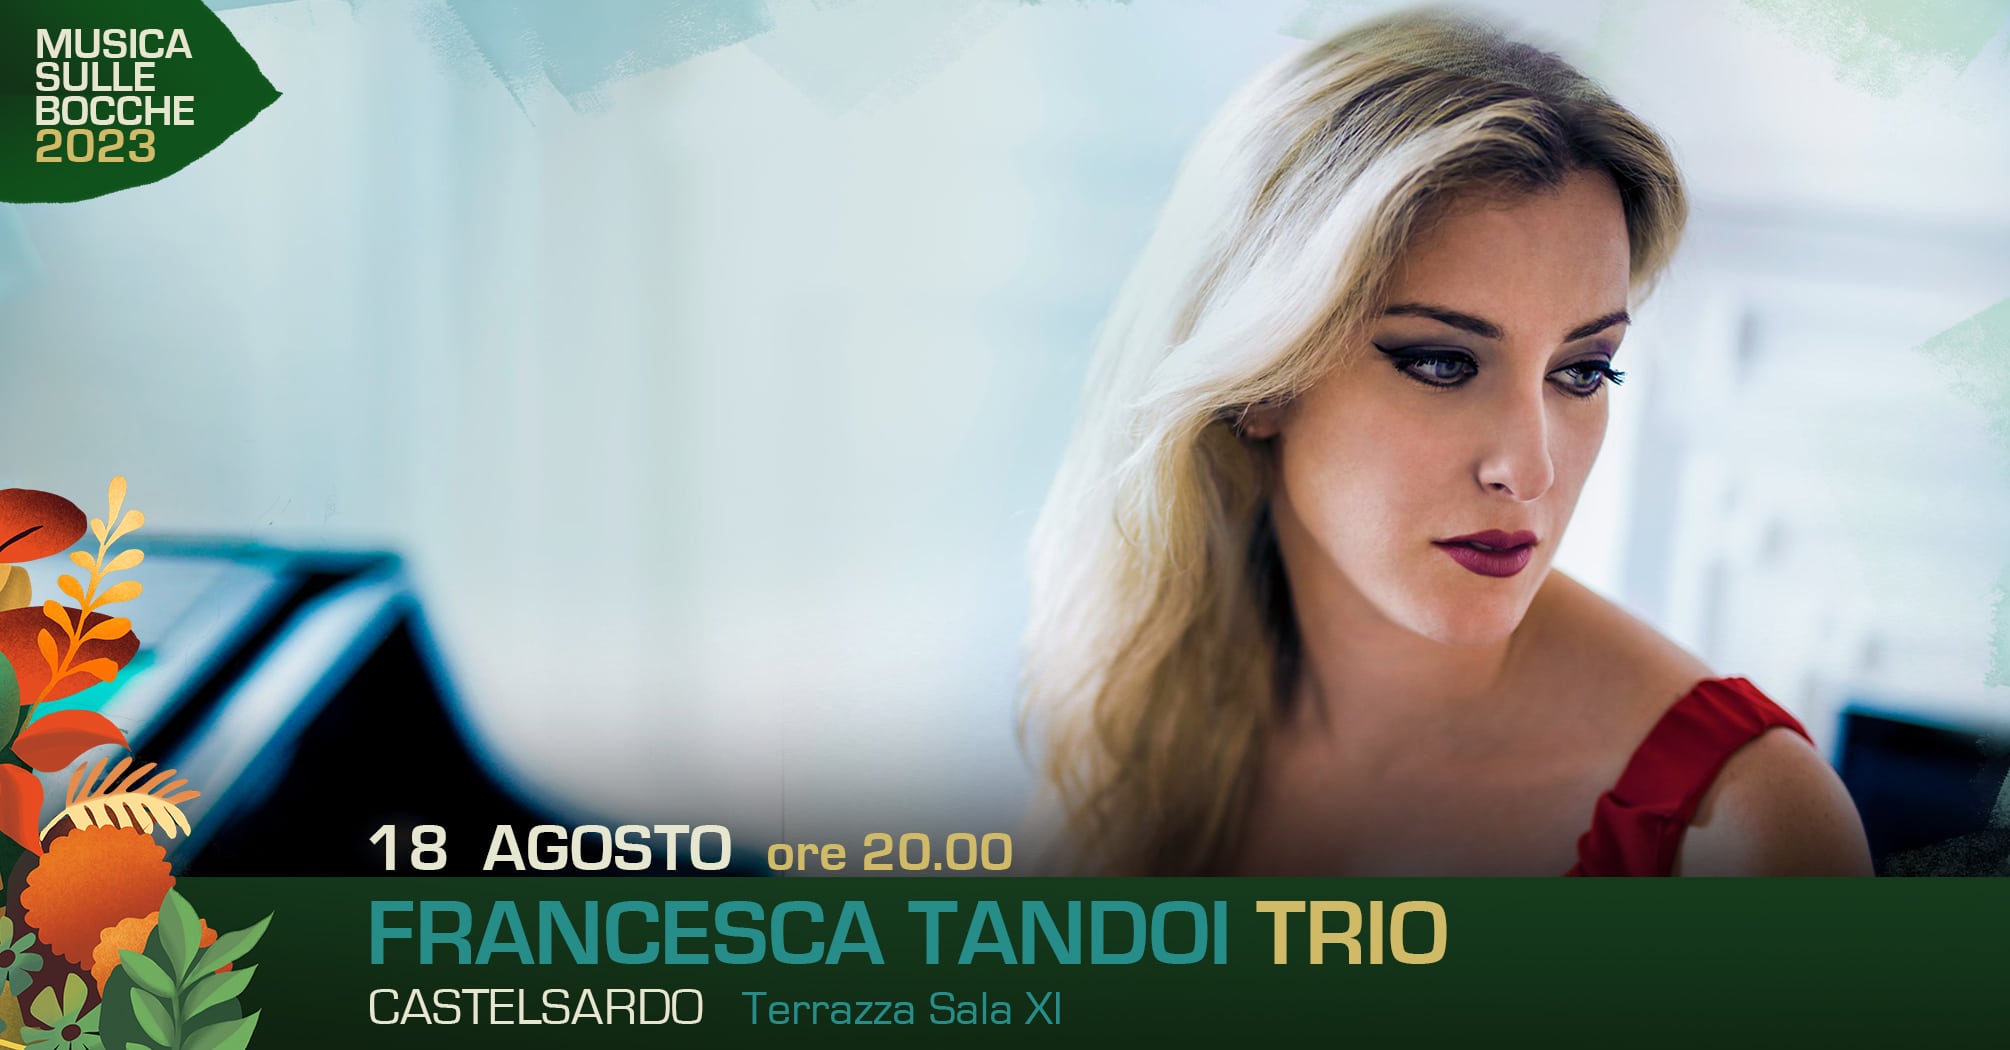 Francesca Tandoi Trio | Castelsardo